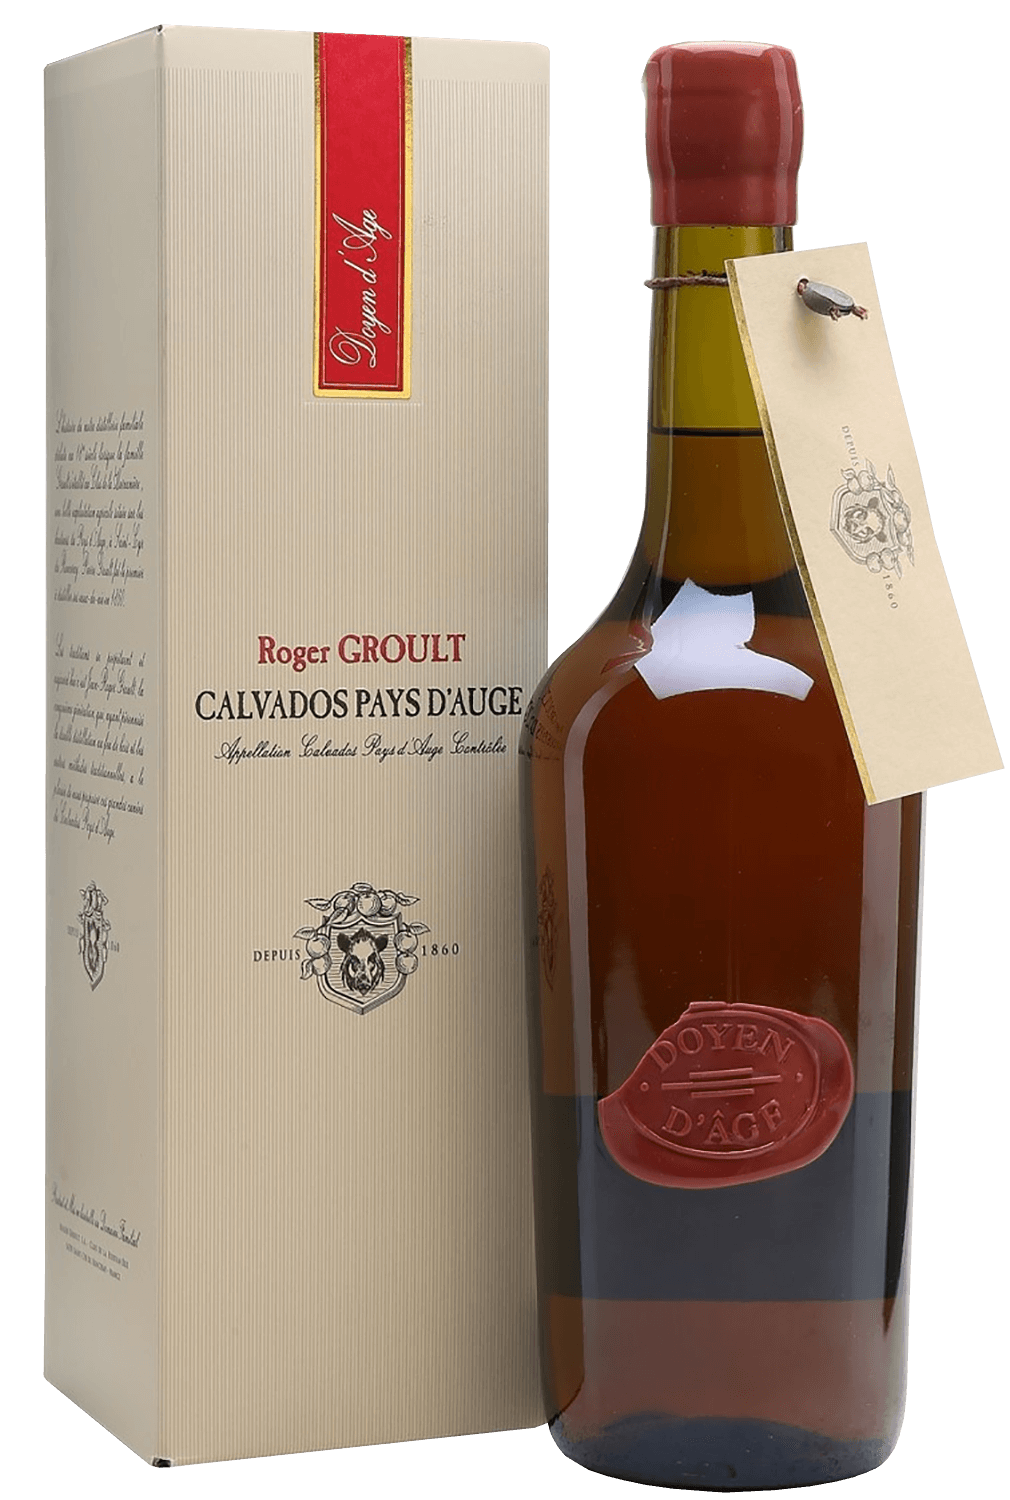 Doyen d'Or Calvados Pays D'Auge AOC Roger Groult (gift box) age d or calvados pays d auge aoc roger groult gift box